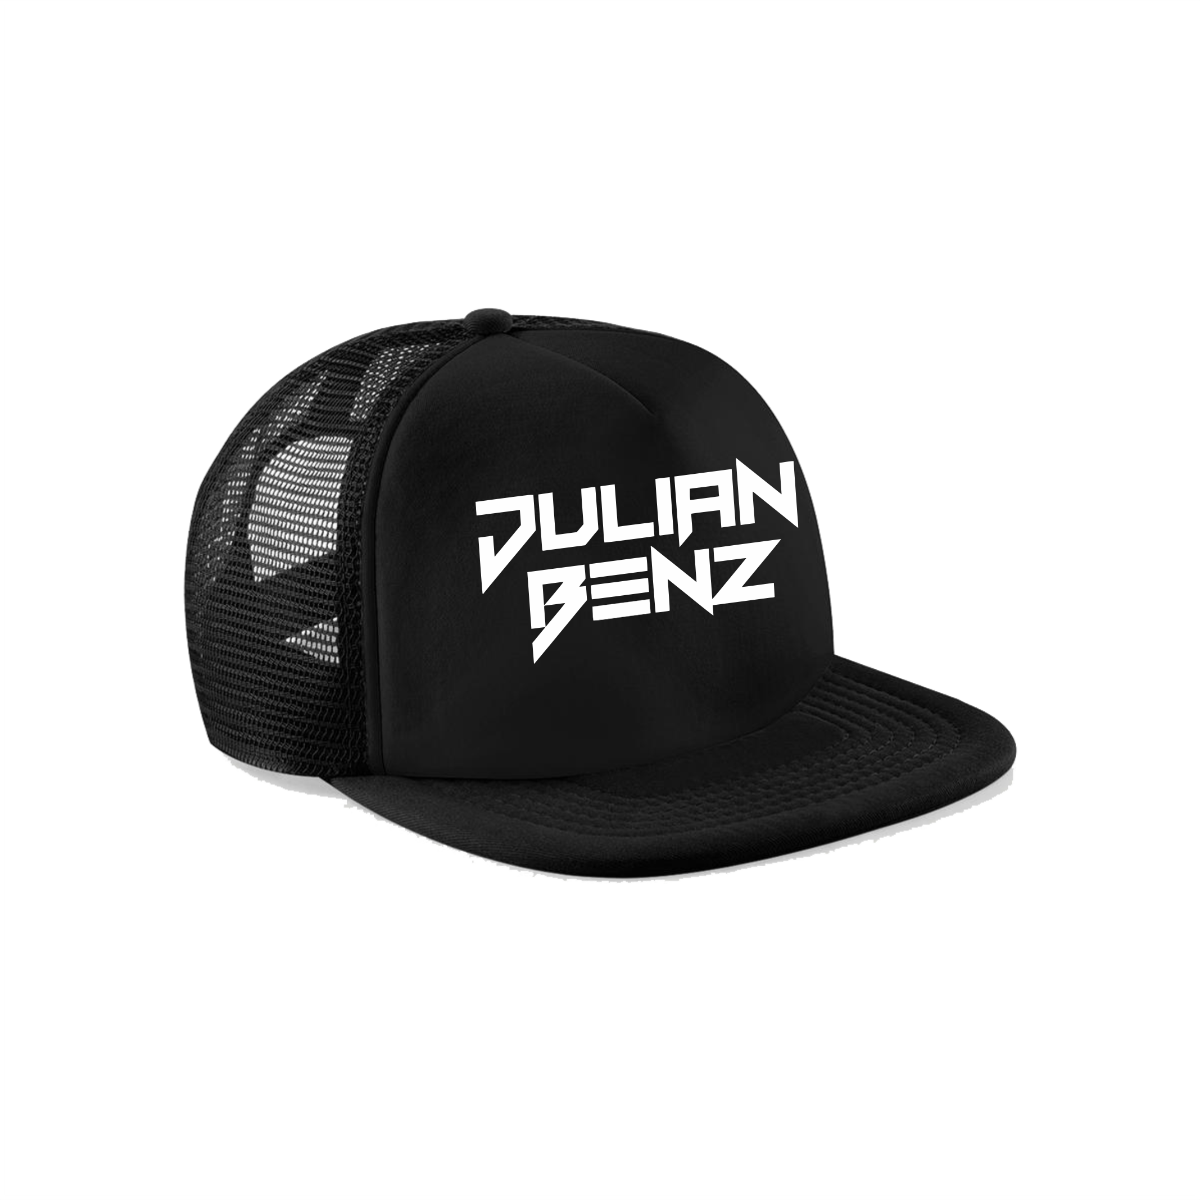 Cap "JULIAN BENZ Logo" schwarz